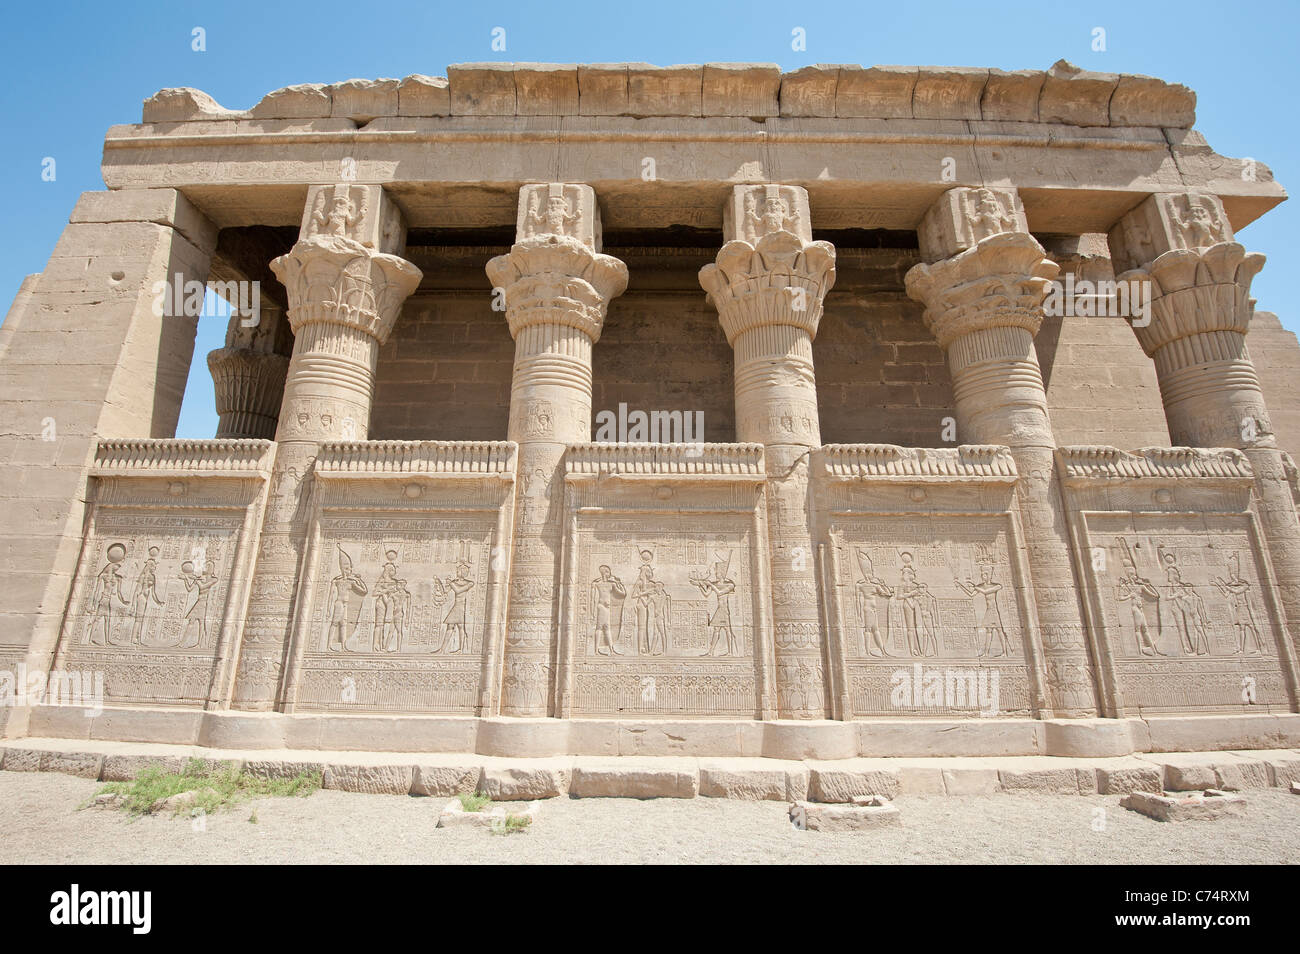 Los restos de un antiguo templo egipcio con columnas y tallas jeroglífico Foto de stock